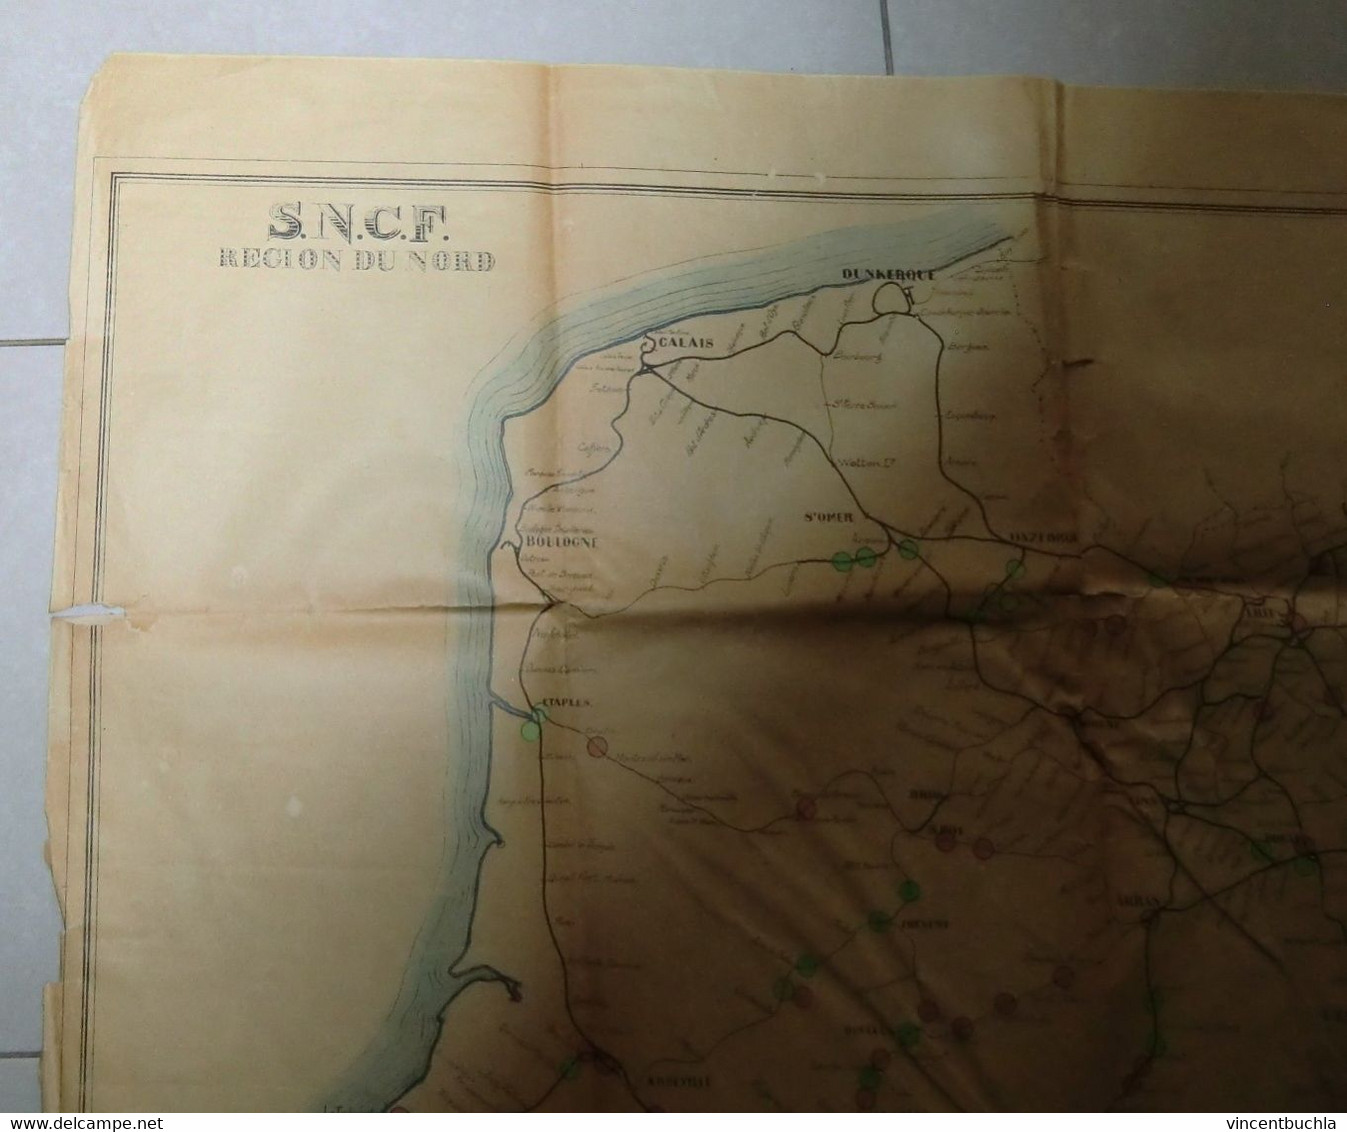 Rare Carte SNCF Nord Coupure Voies Juillet 1944 Resistance Bombardement Document Historique - Europe